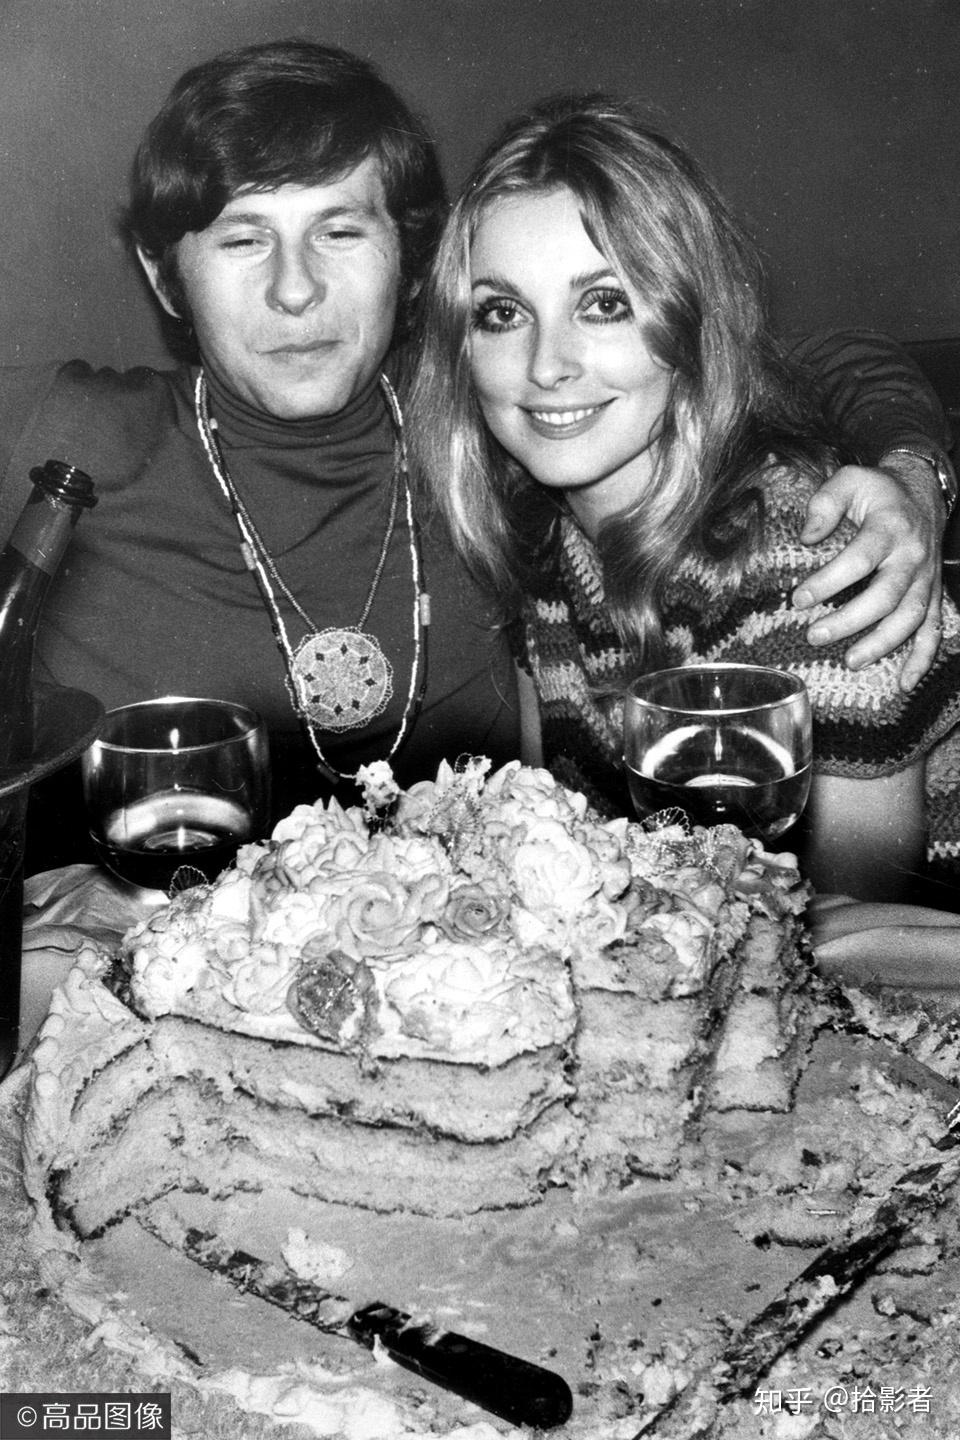 莎朗·塔特与罗曼·波兰斯基在1968年注册结婚,举办了隆重的婚宴